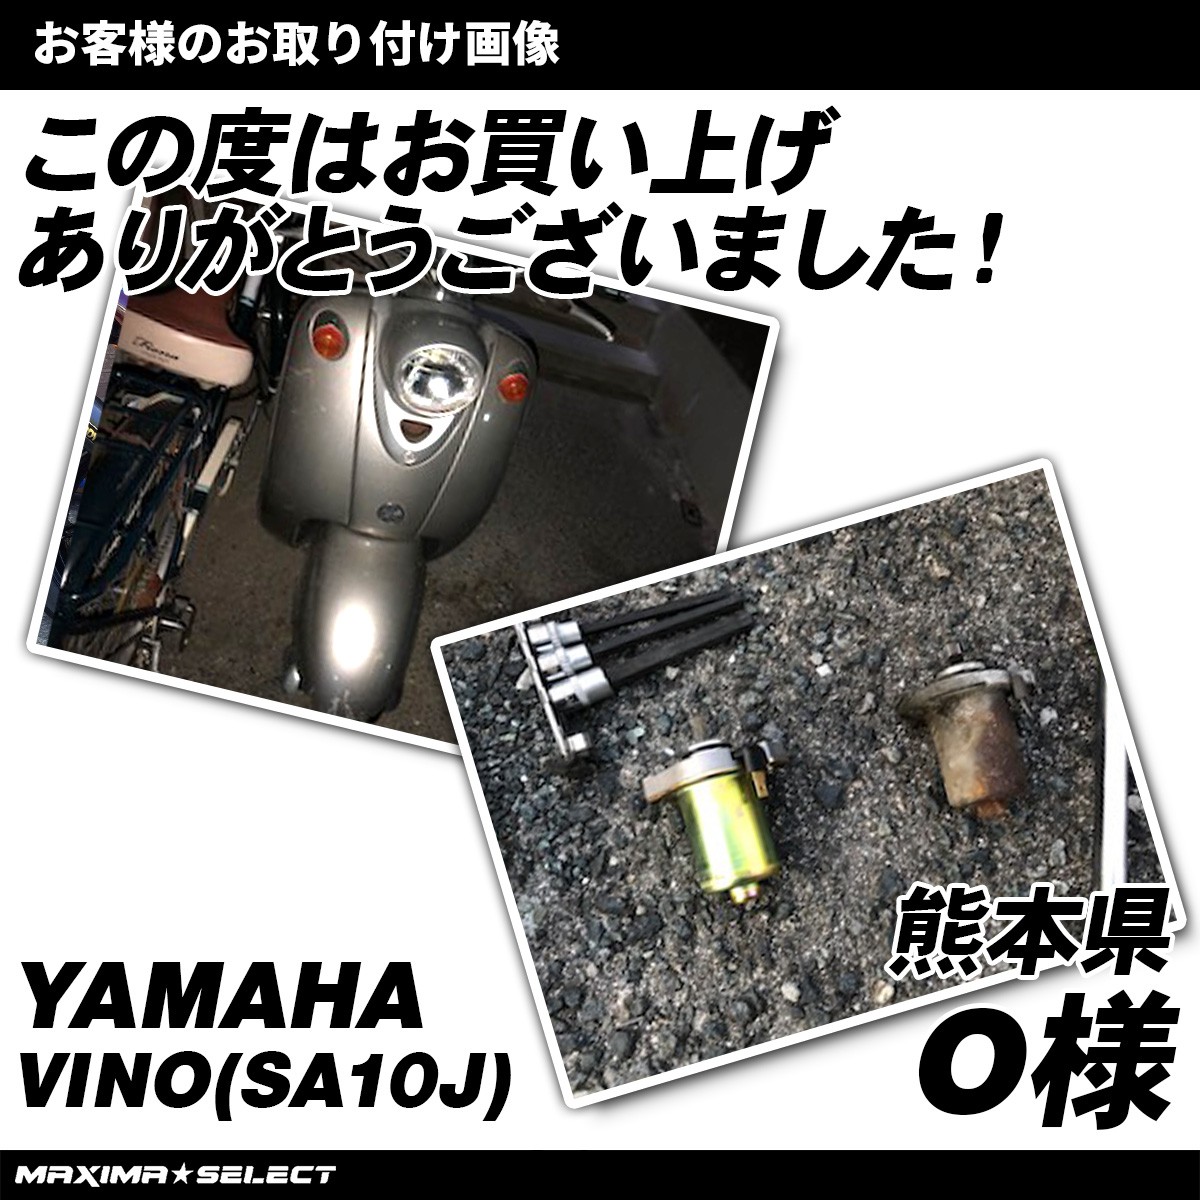  мотоцикл YAMAHA стартерный двигатель Yamaha Aprio Vino Jog техническое обслуживание двигатель детали стартерный двигатель оригинальный такой же детали пусковой двигатель -